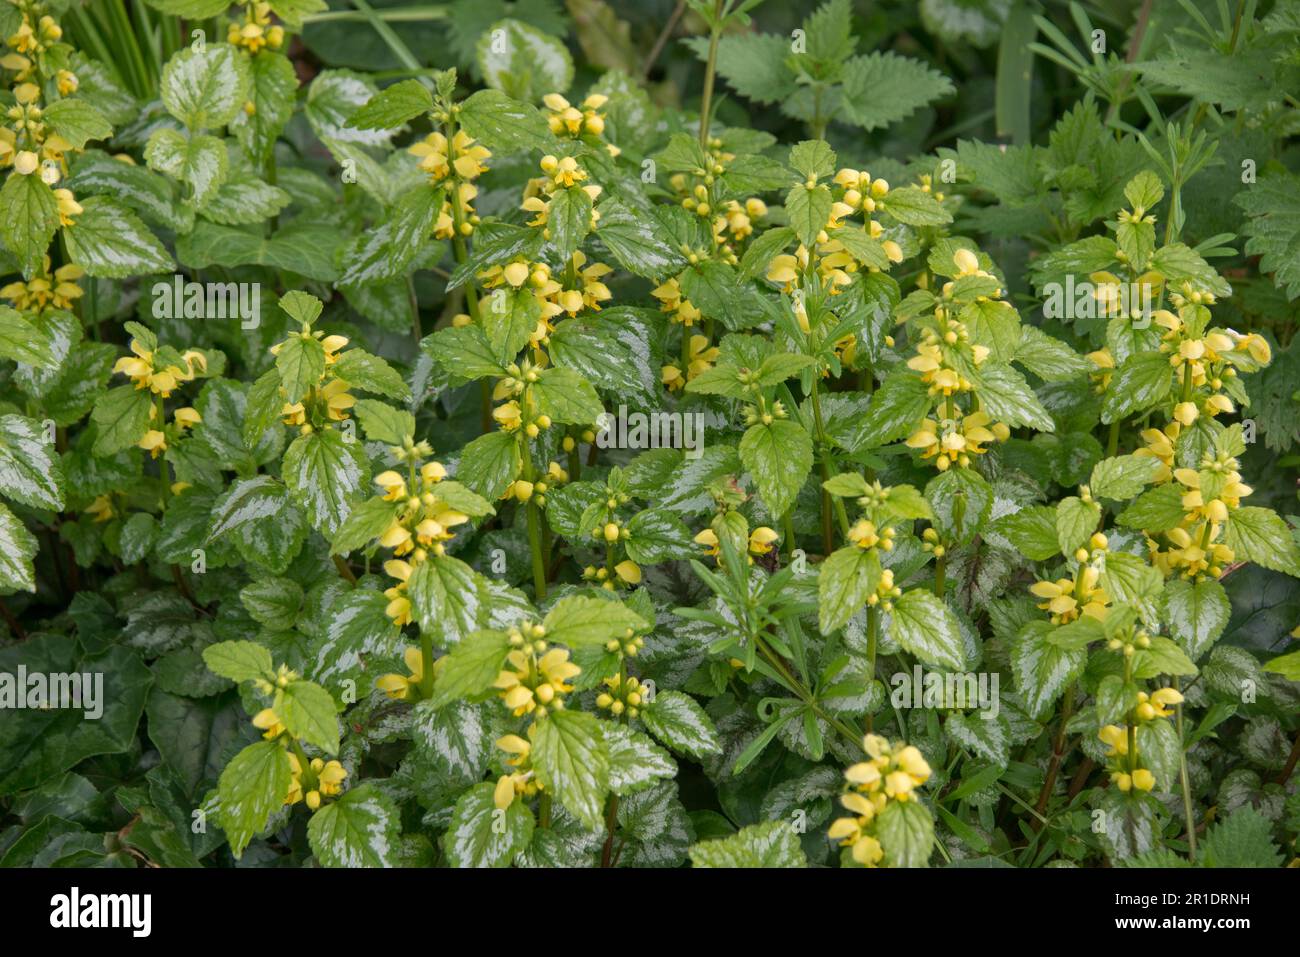 Arcángel amarillo variegado ( Lamium galeobdolon) en flor con parches de hojas plateadas, una especie de planta invasiva, introducida común en jardines, Berksh Foto de stock